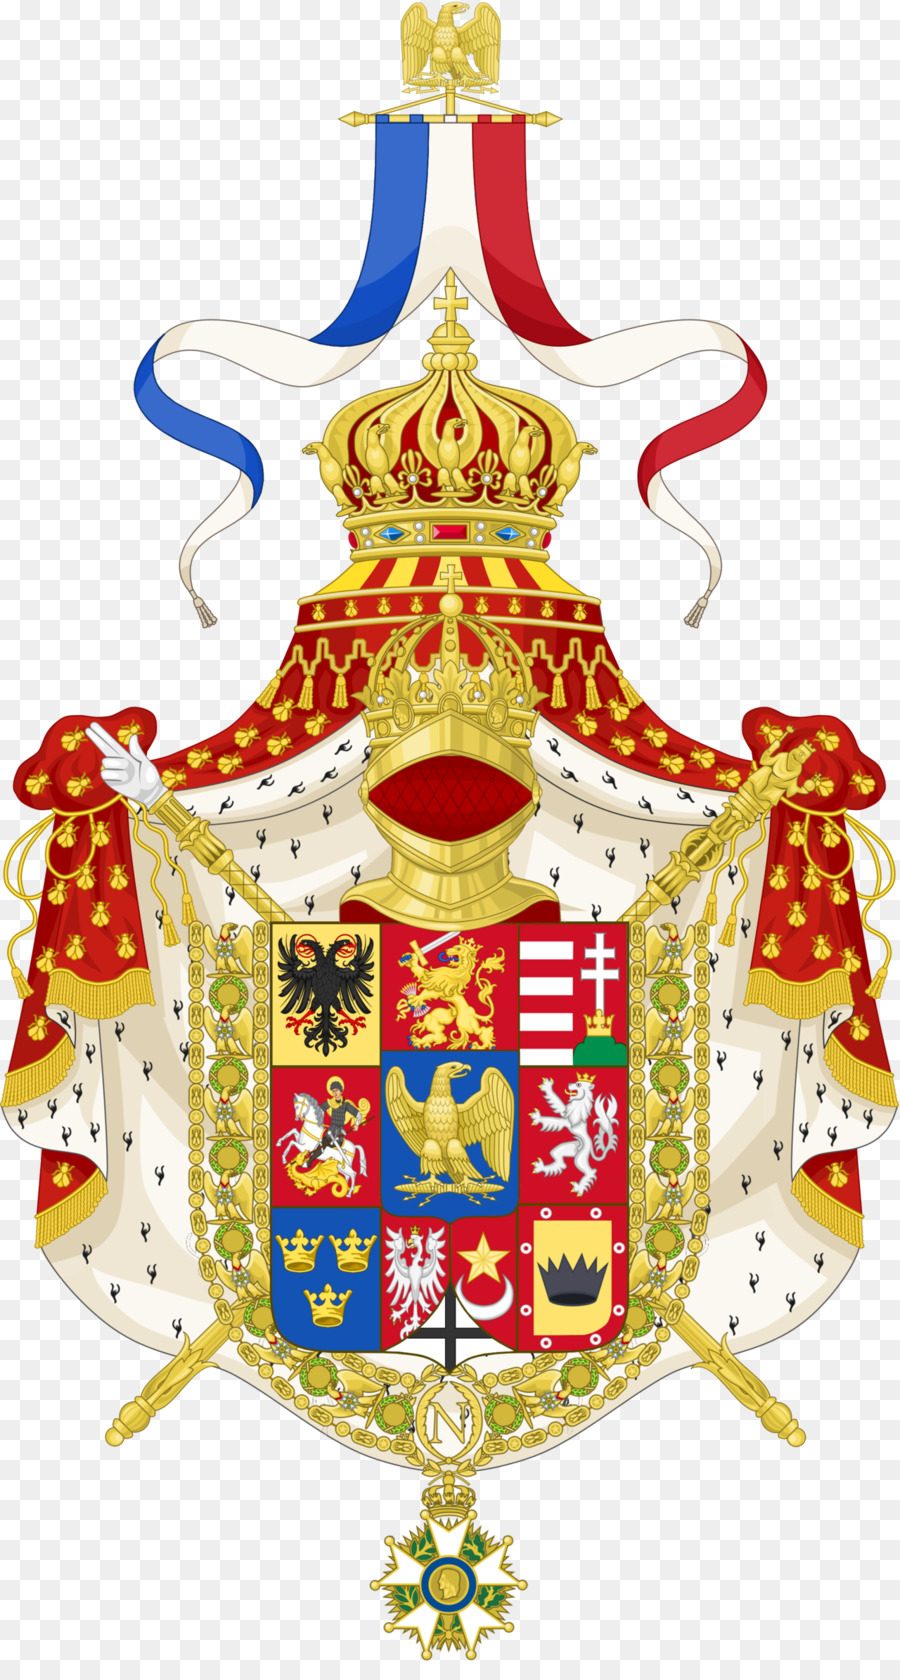 Nationales emblem von Frankreich Wappen Blasons et armoiries Heraldik - Frankreich